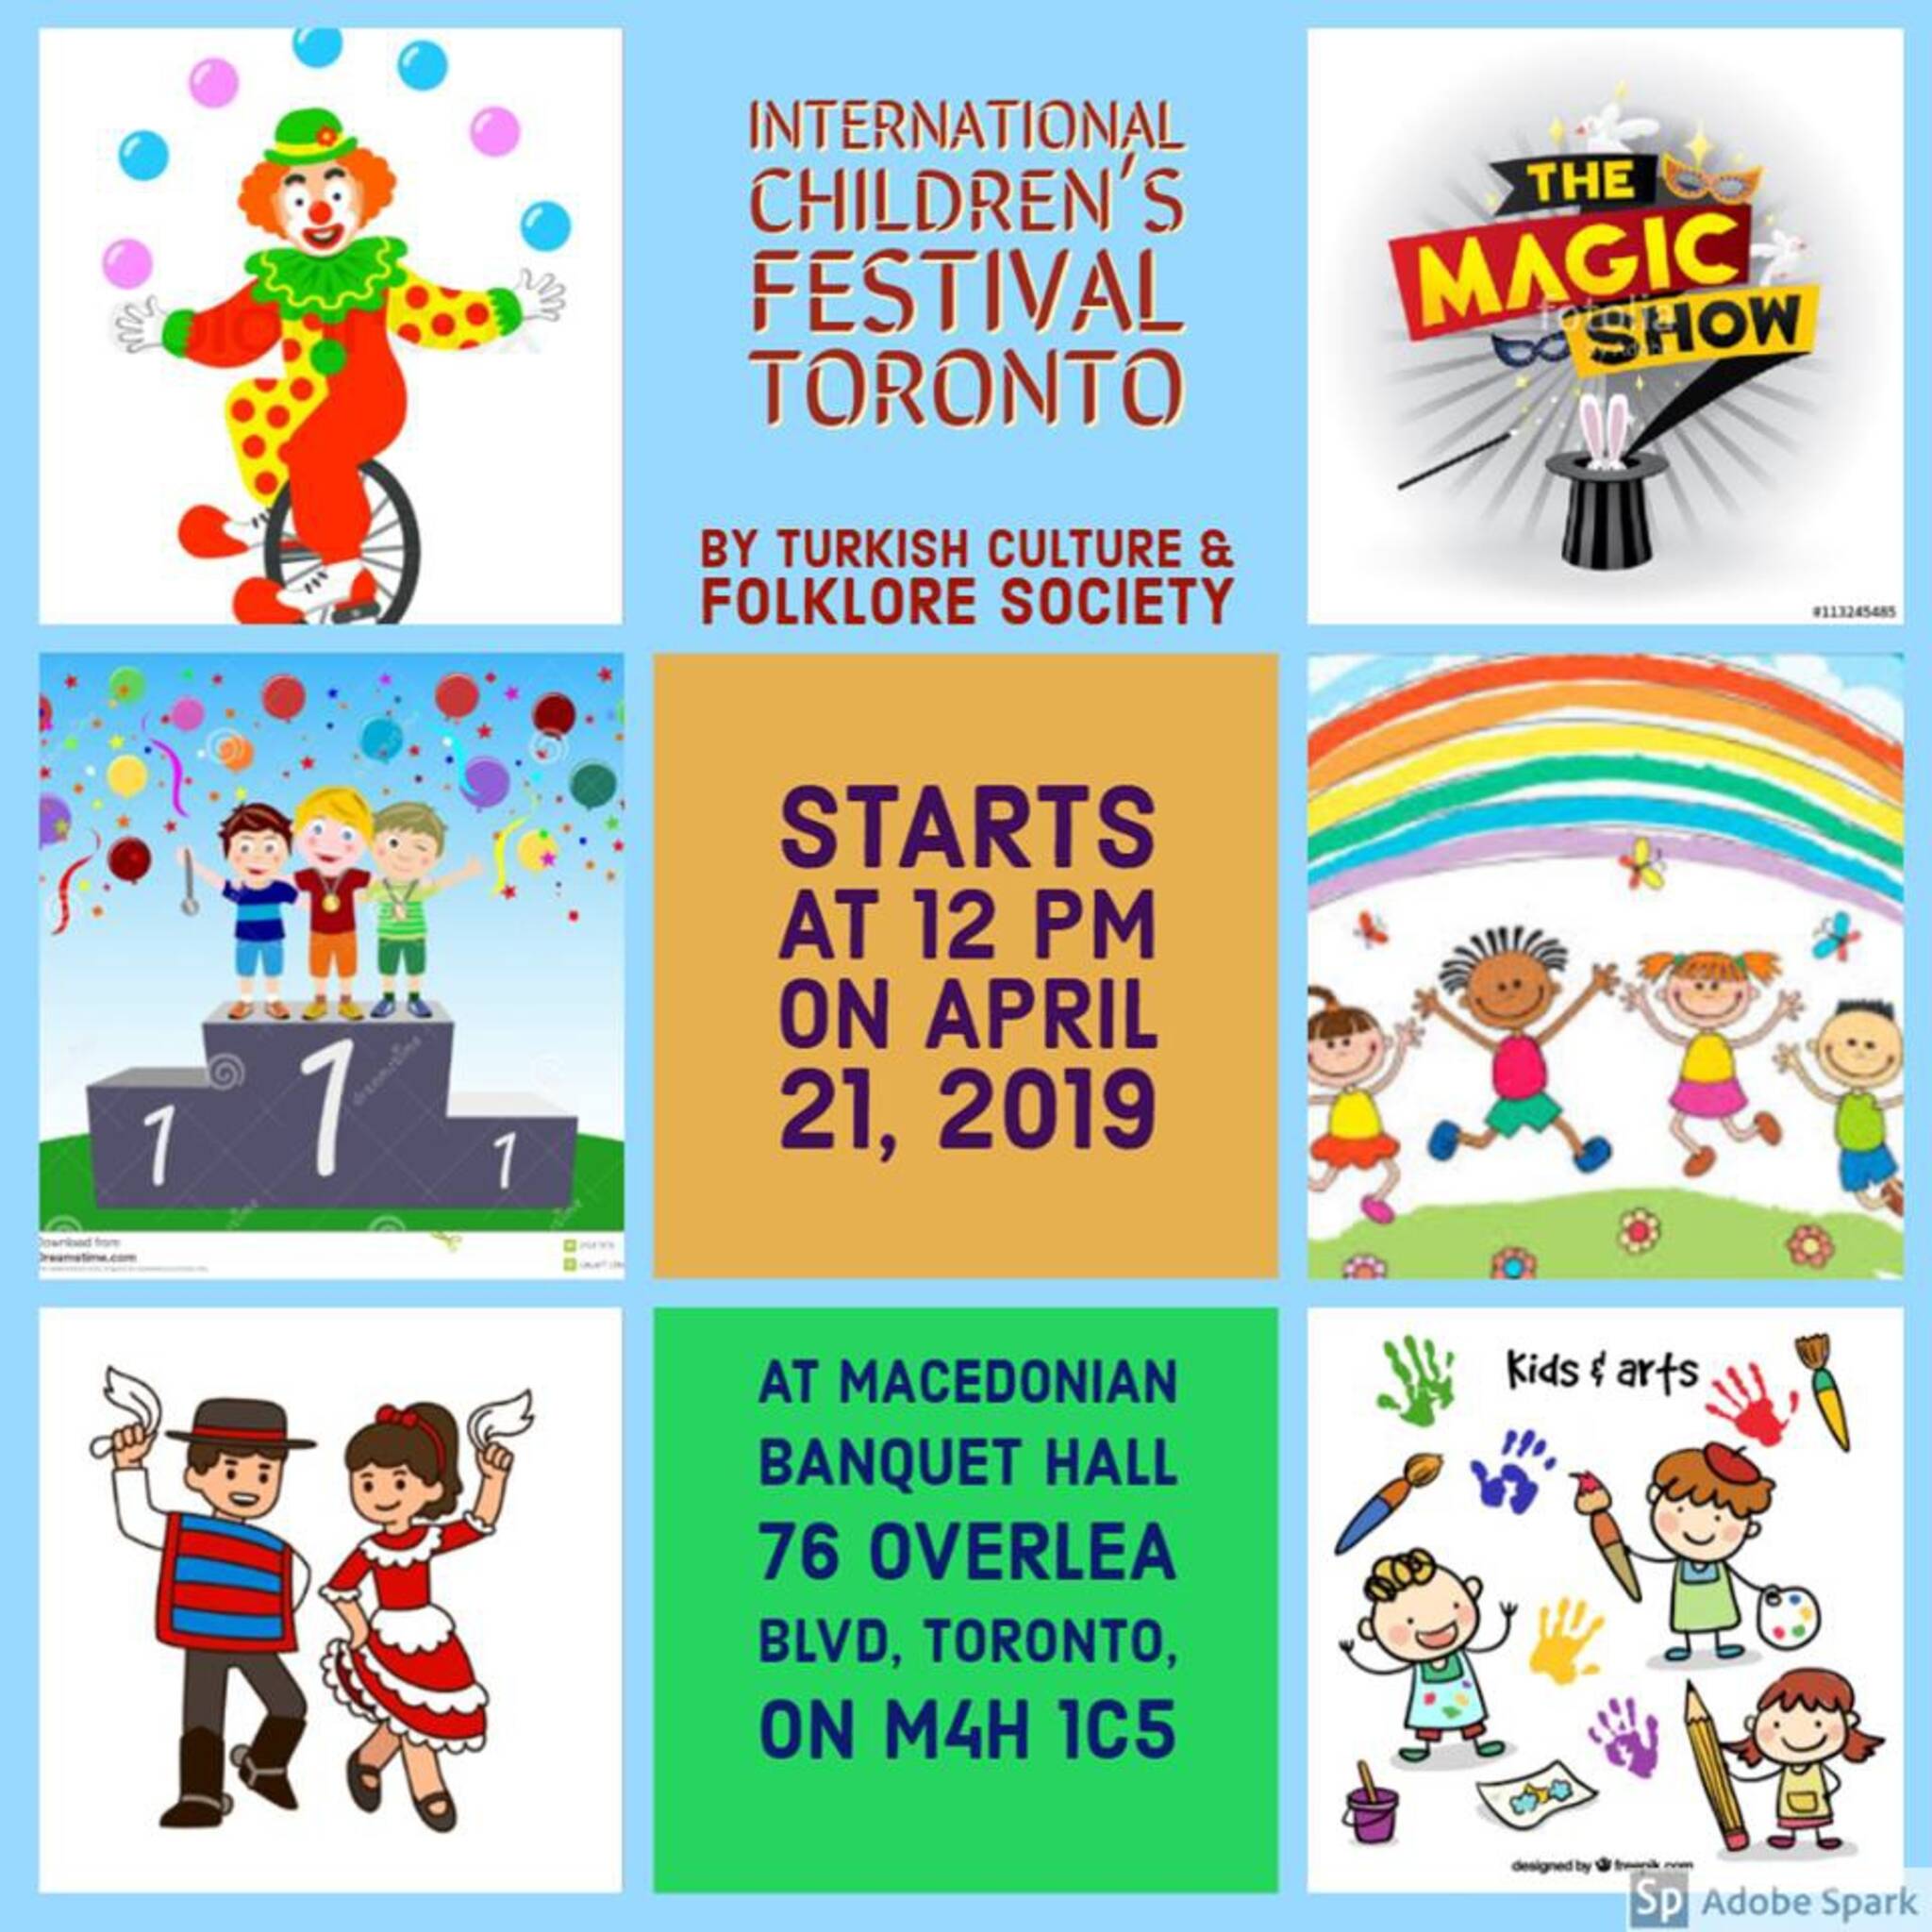 International Children's Festival Toronto